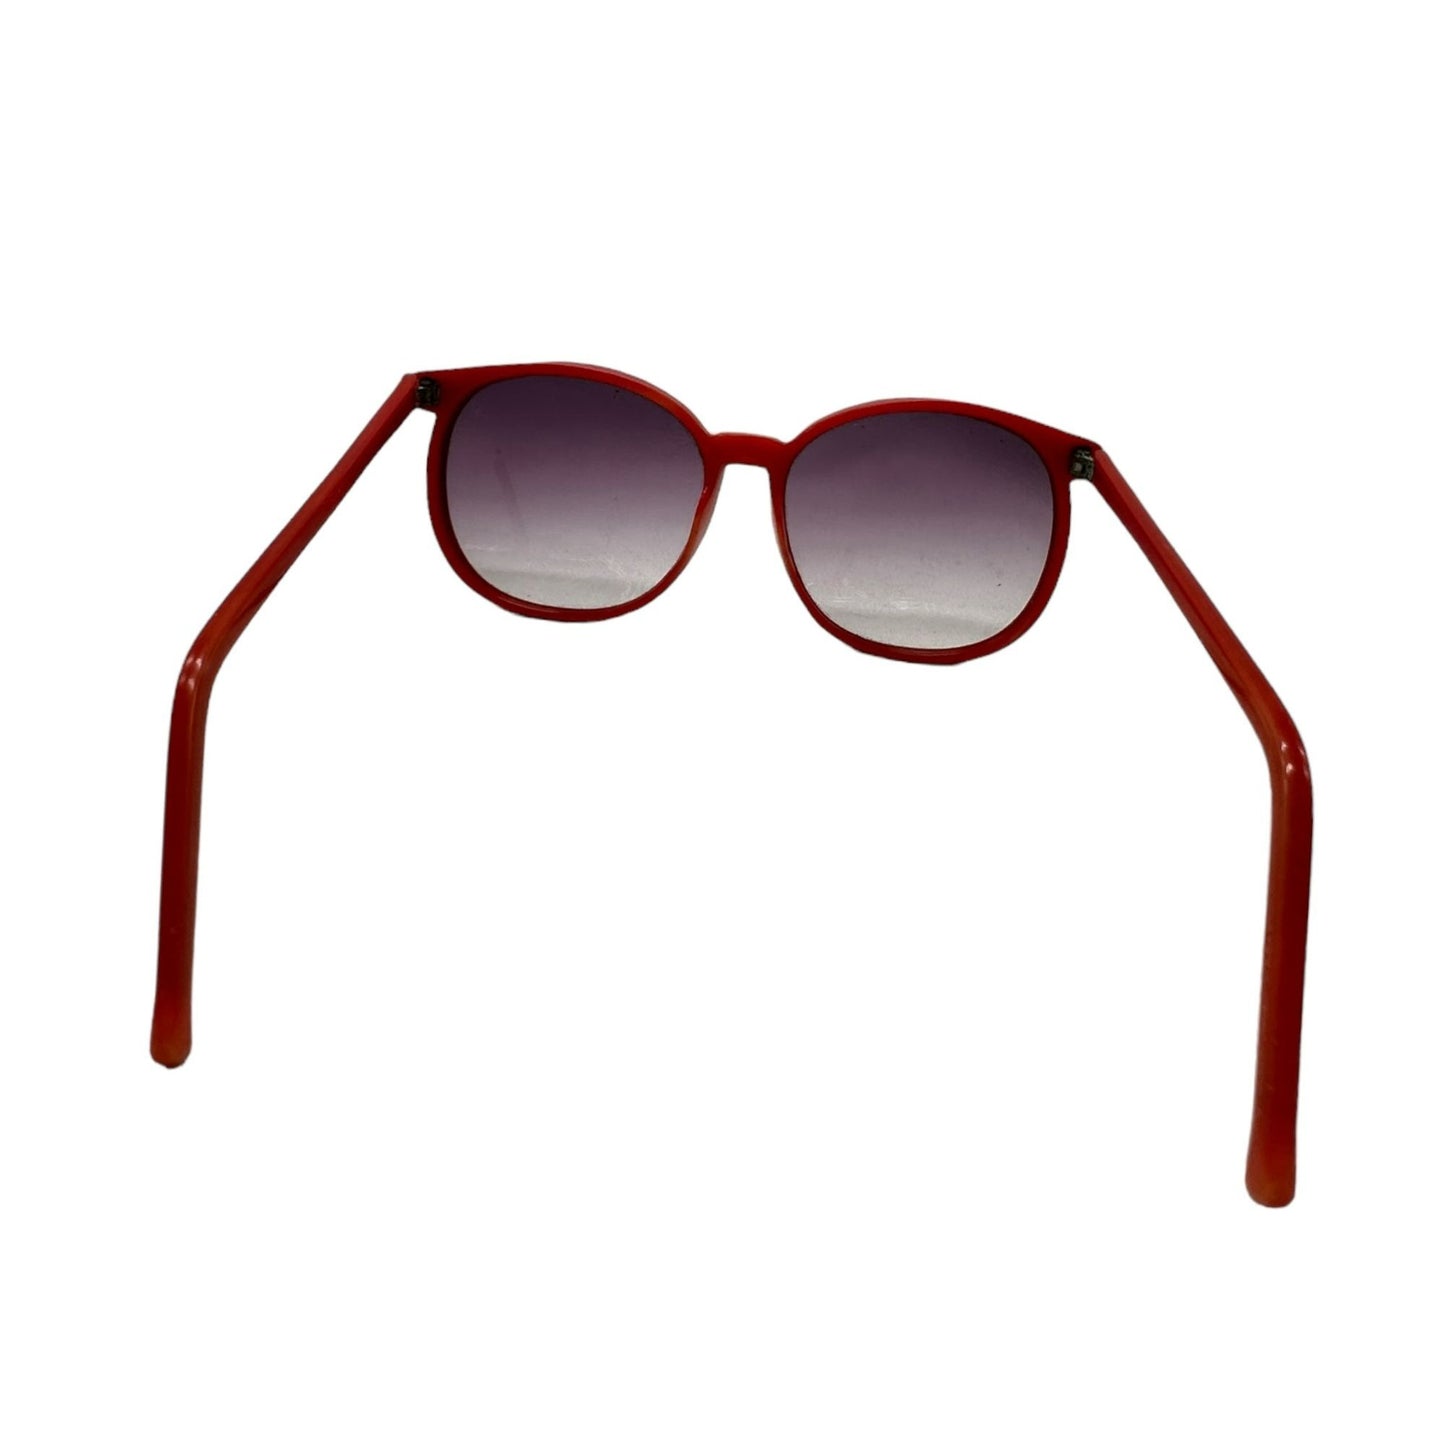 Vintage Burgundy Round Lens Horn-Rimmed Sunglasses Red Frame Plastic Polarized